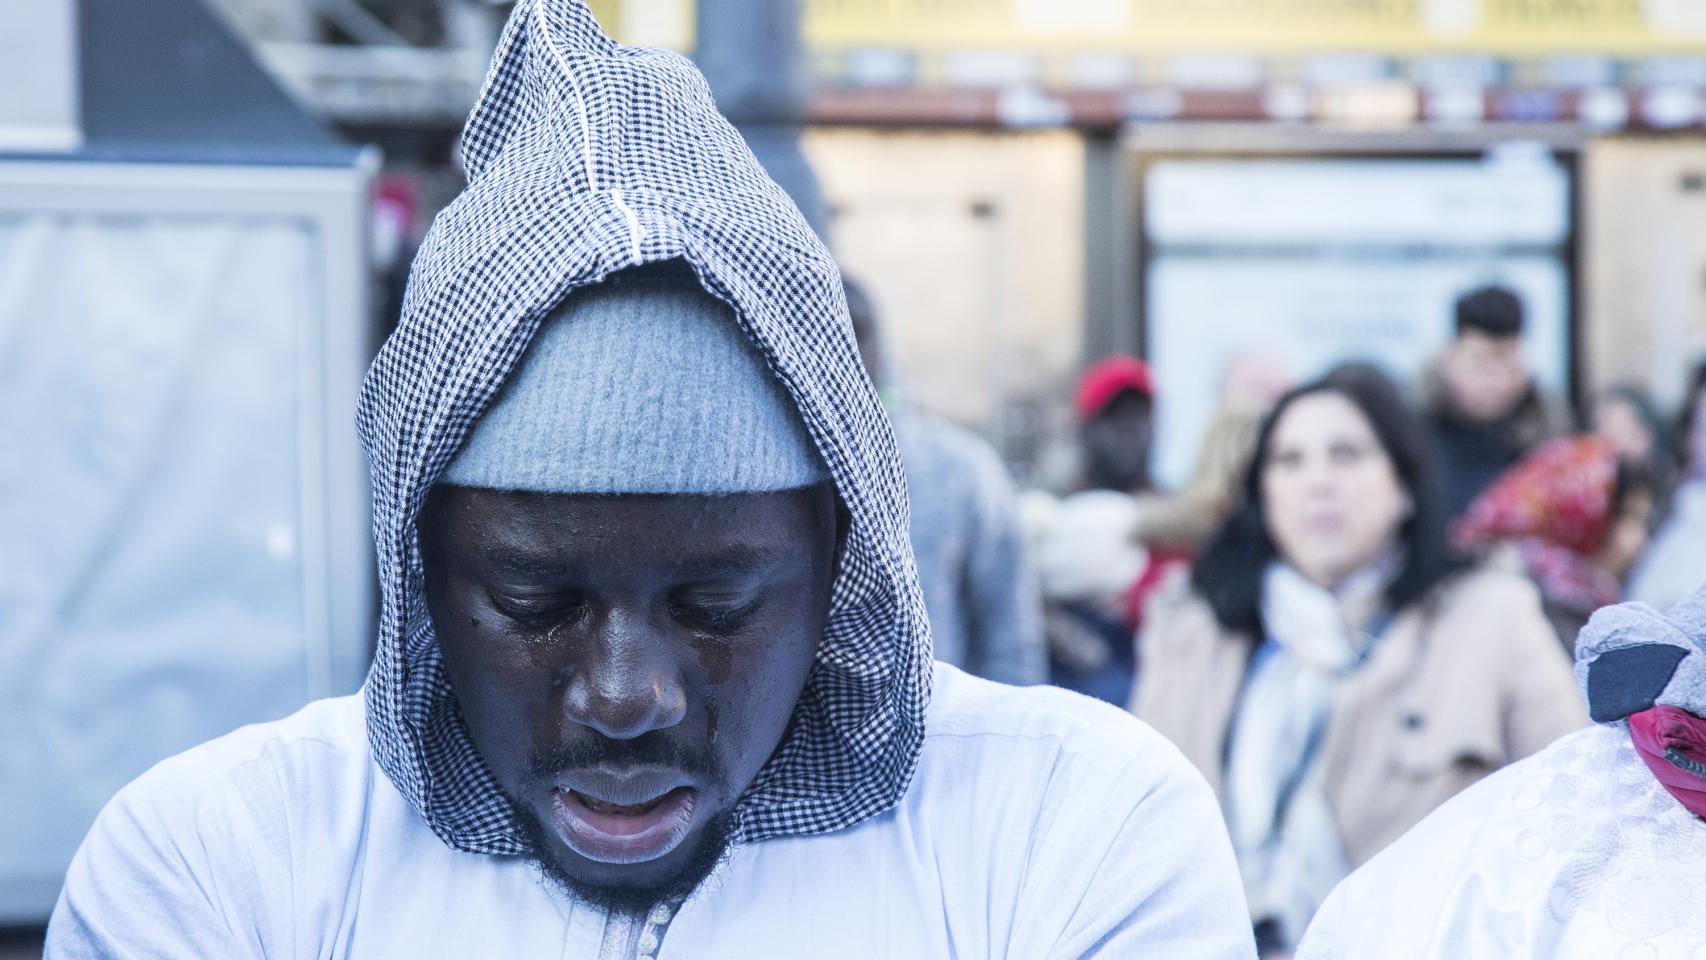 Un senegalés visiblemente emocionado, durante la concentración por la muerte de apoyo a Mbaye en Sol. / Jorge Barreno